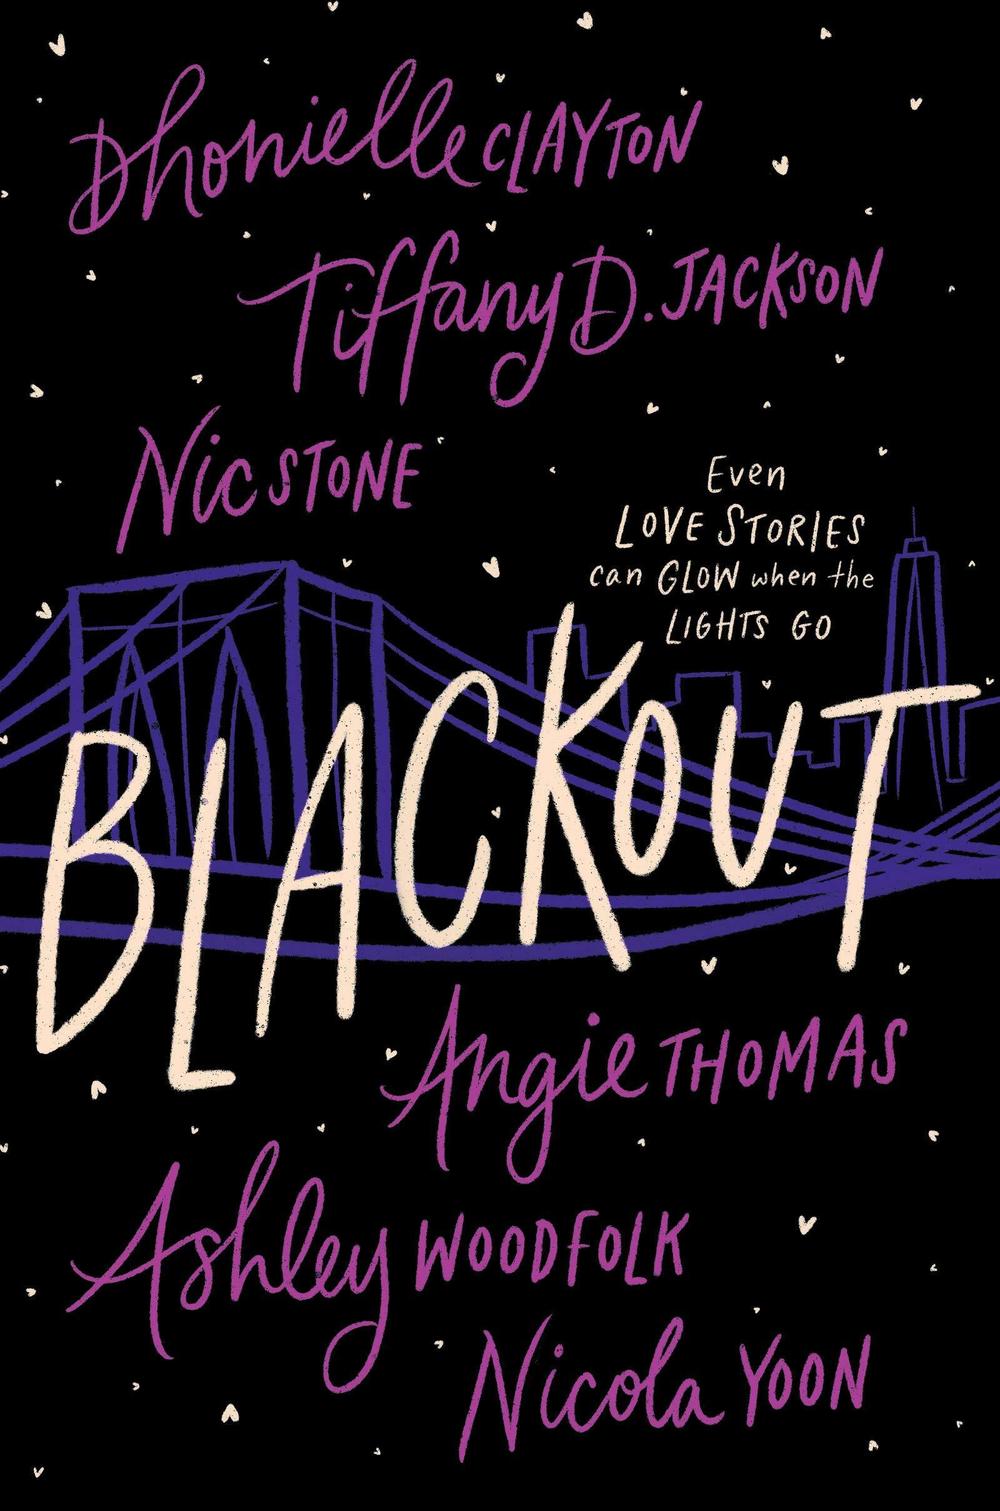 <em></em><em>Blackout</em>, by<strong> </strong>Dhonielle Clayton, Tiffany D. Jackson, Nic Stone, Angie Thomas, Ashley Woodfolk, and Nicola Yoon